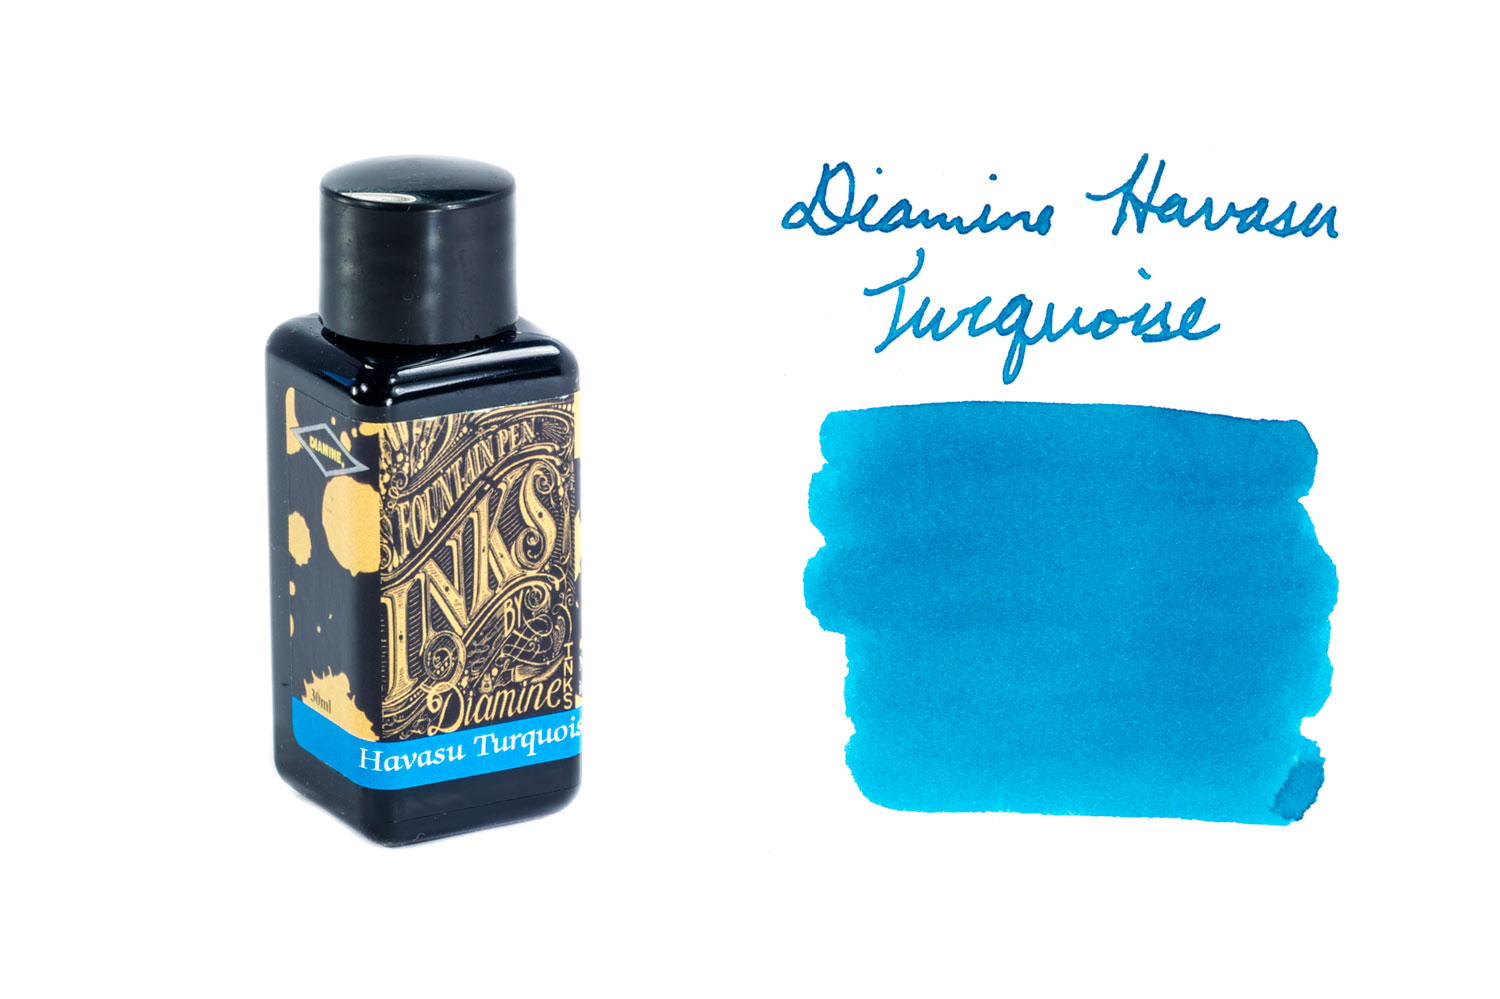 Diamine Havasu Turquoise fountain pen ink